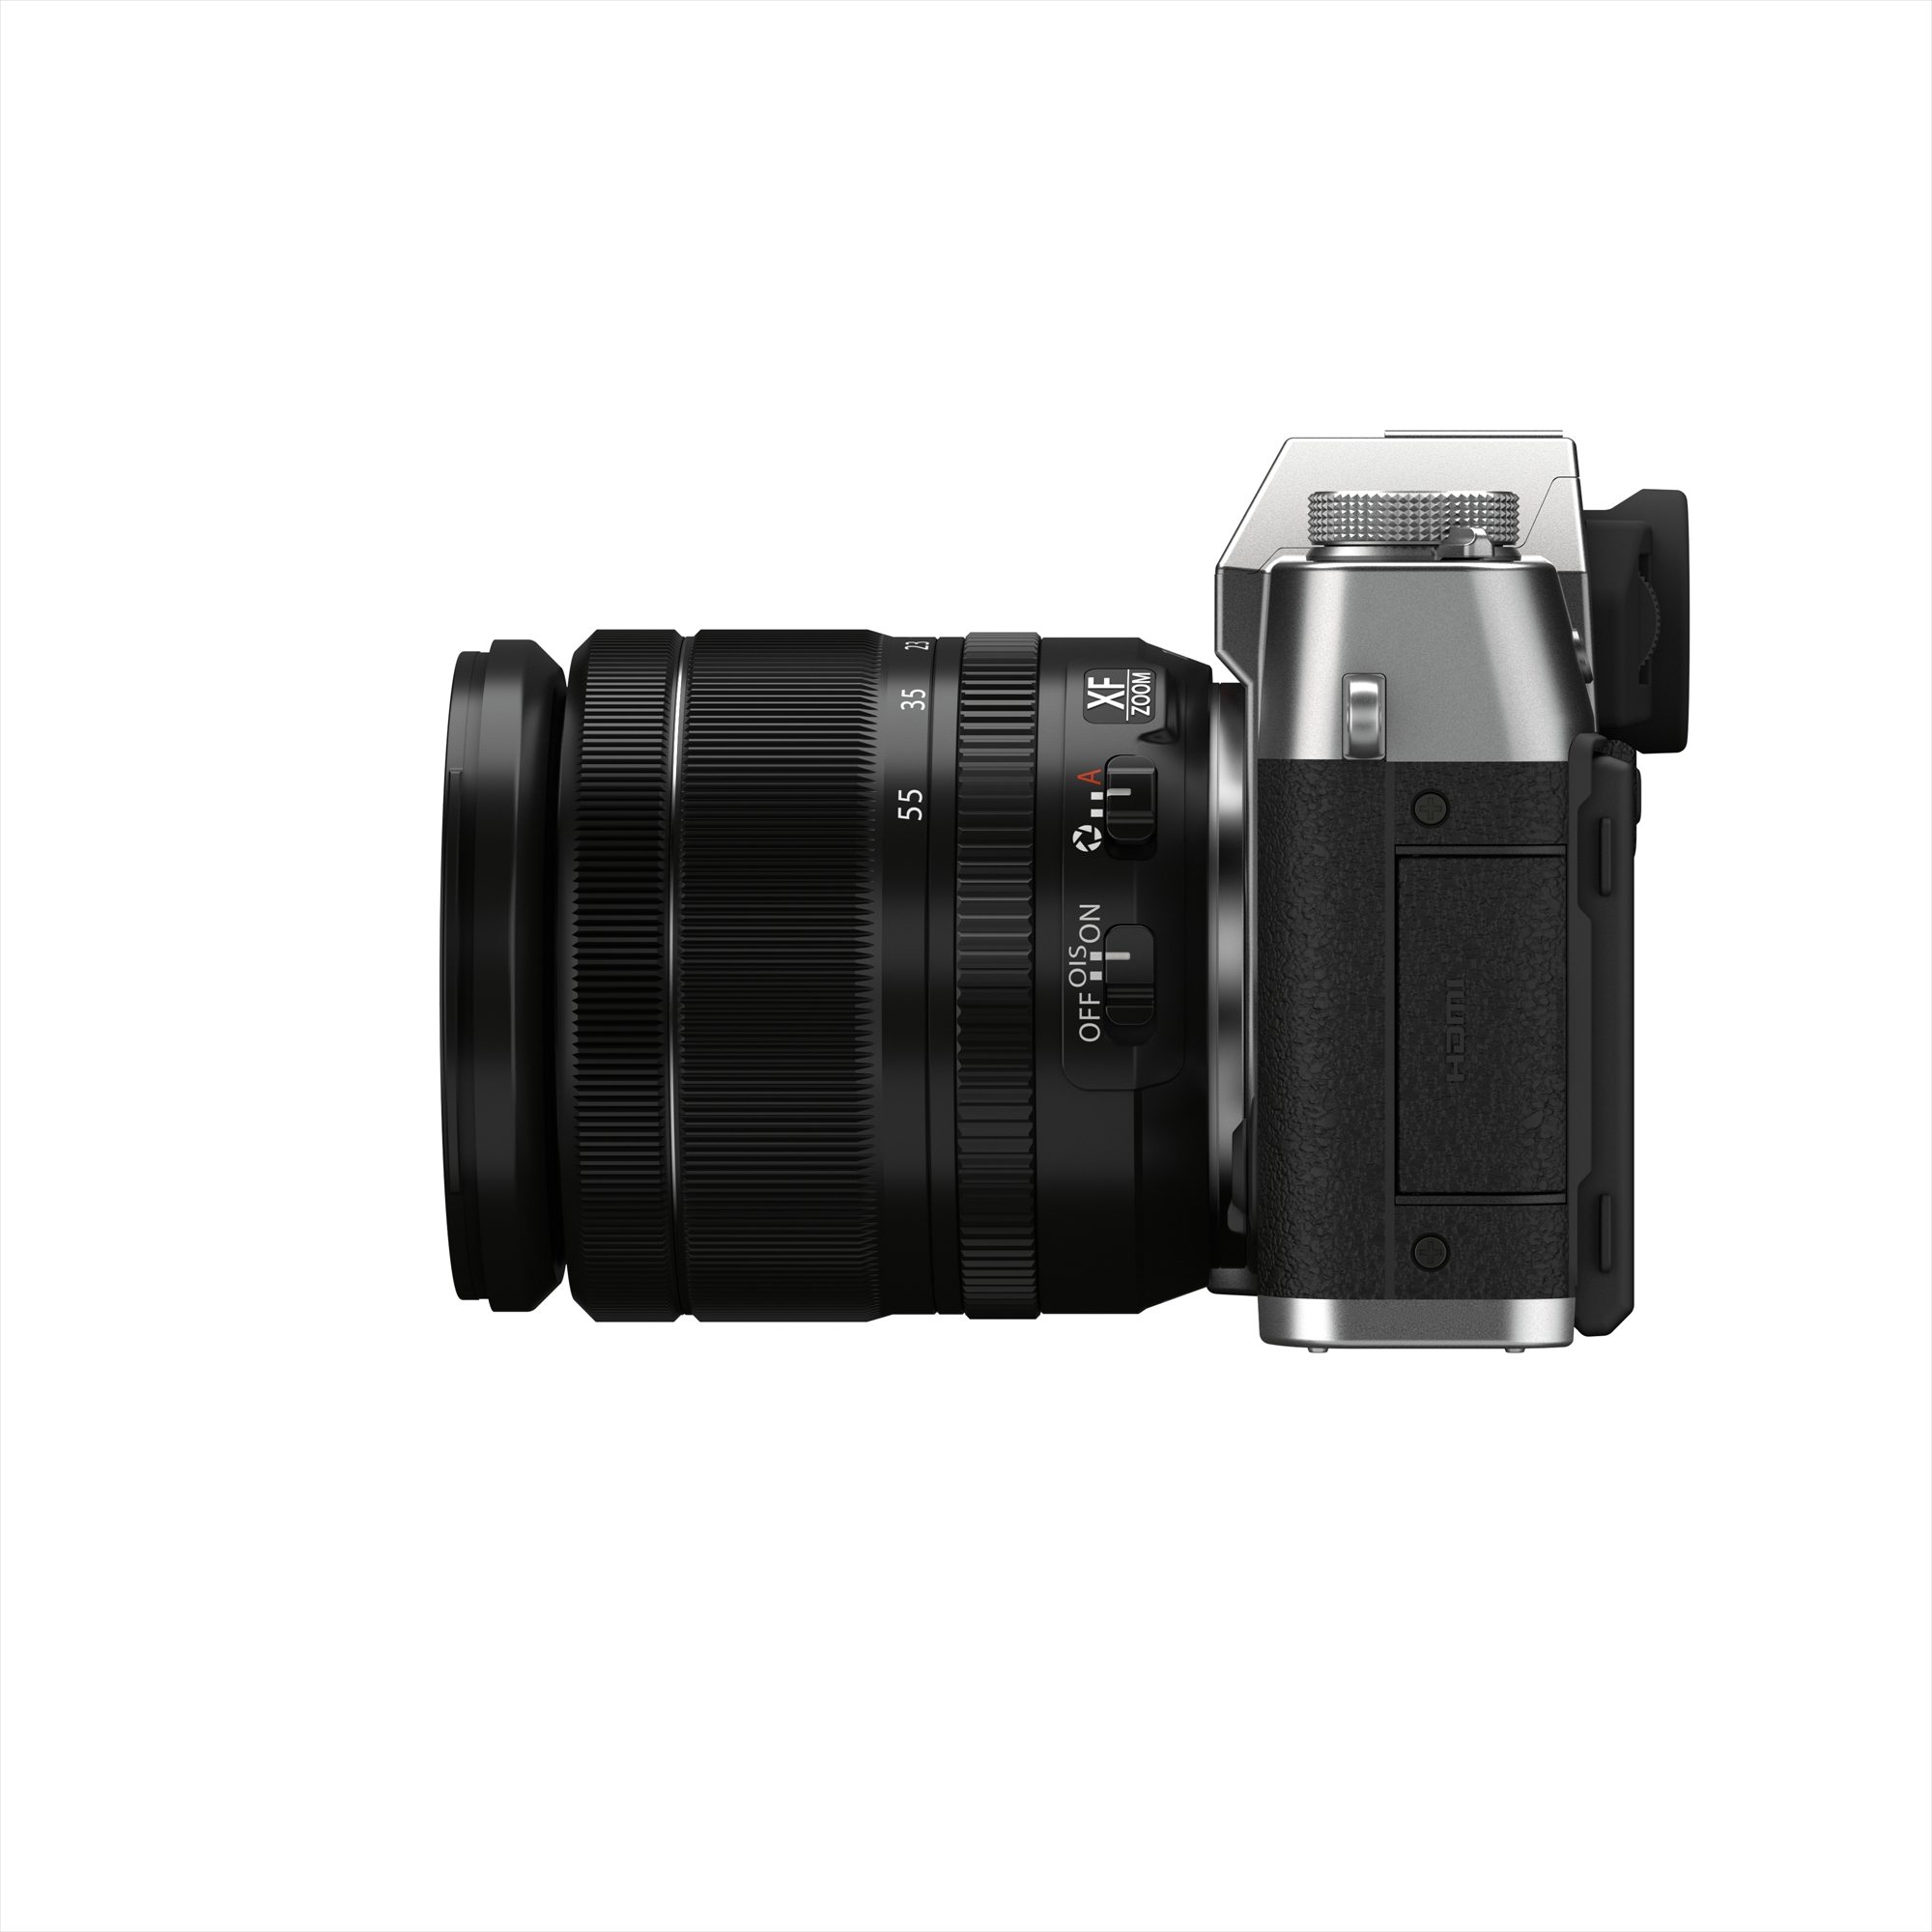 Fujifilm X-T30 II with XF 18-55 lens - Silver